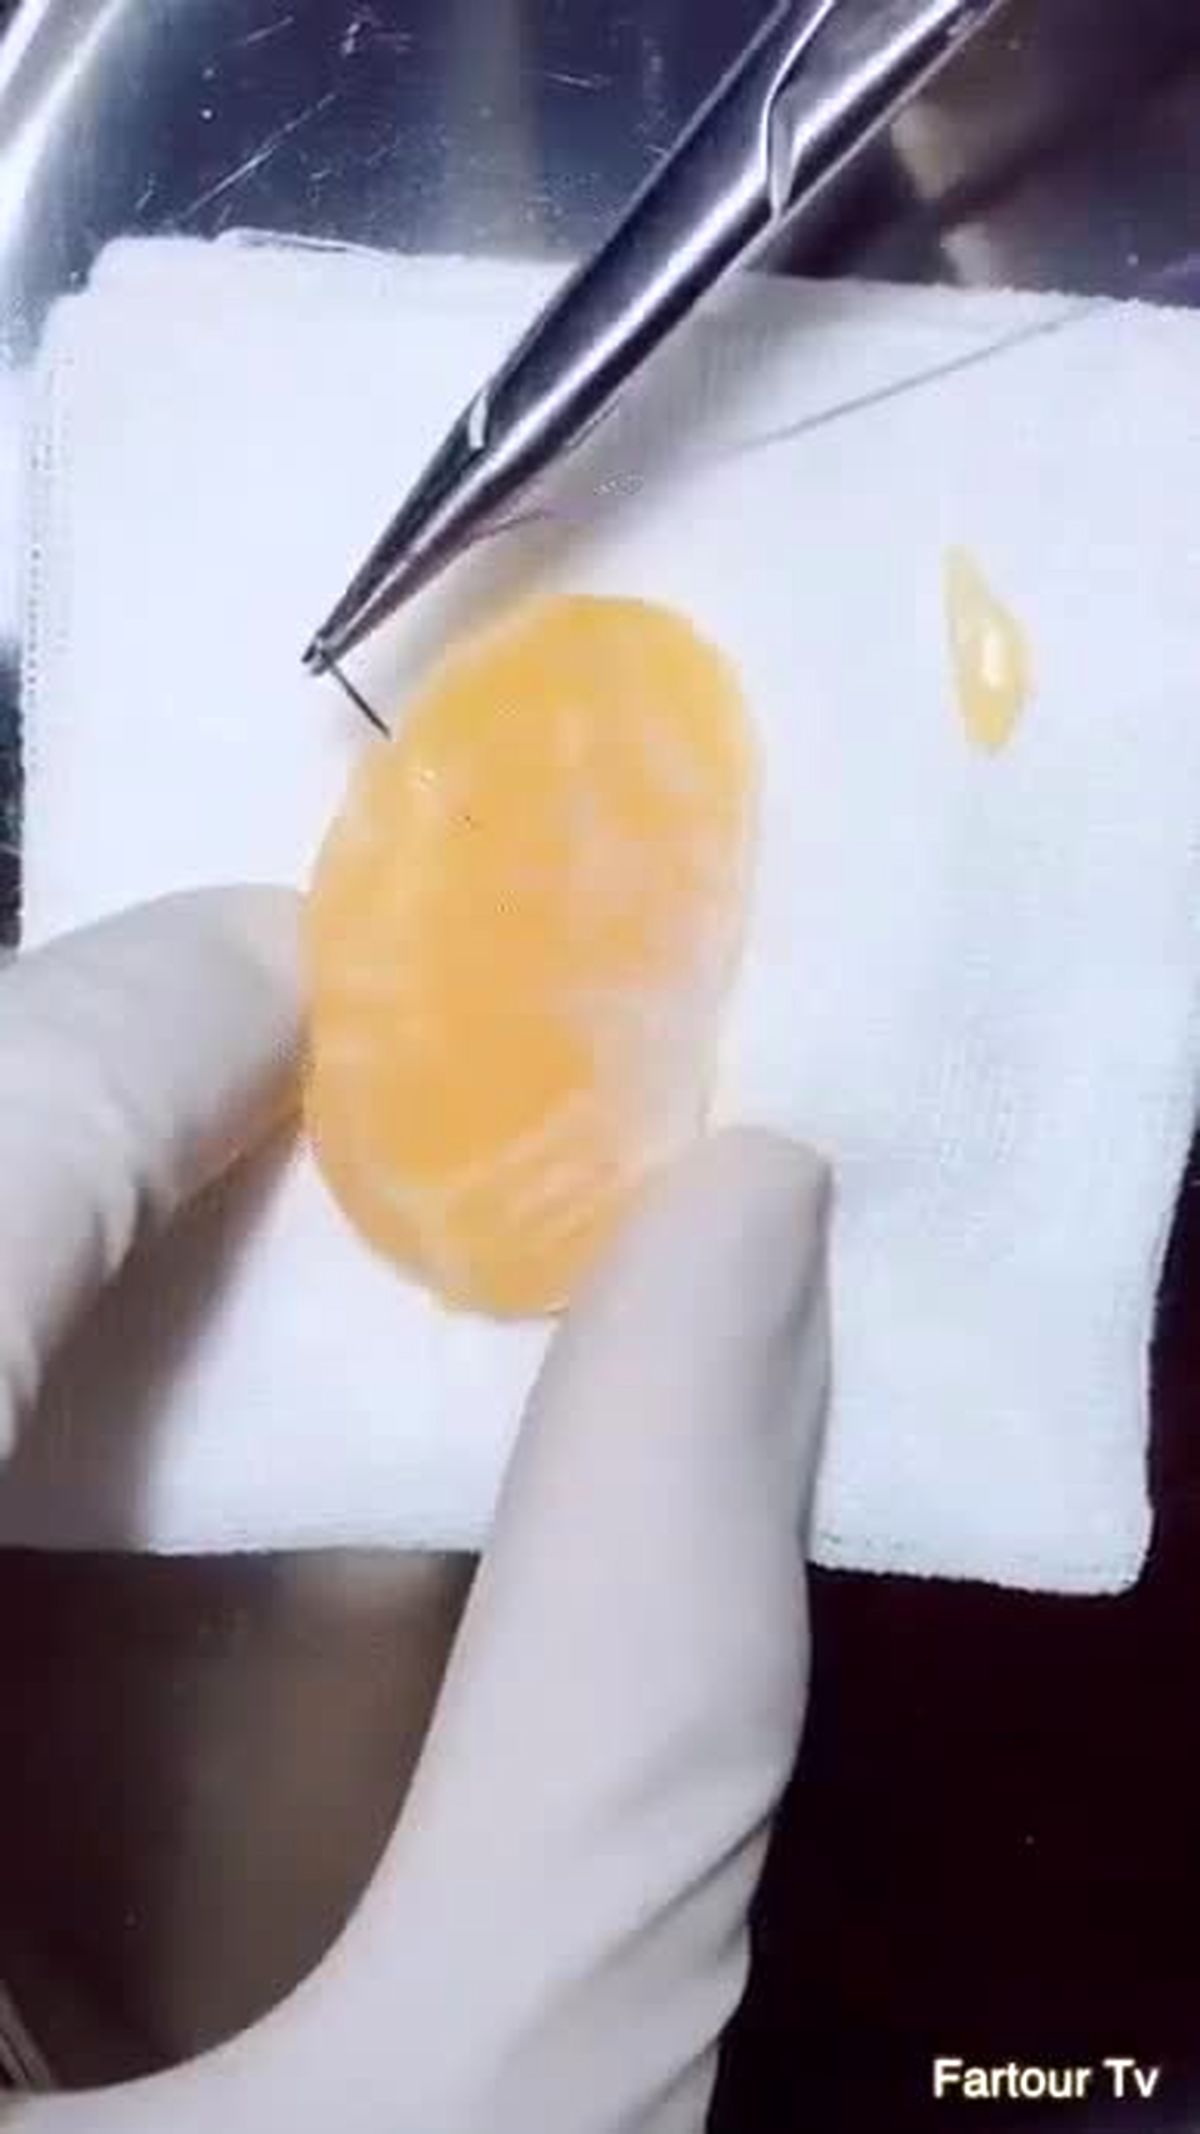 استفاده از نارنگی در تمرین جراحی کلیه!